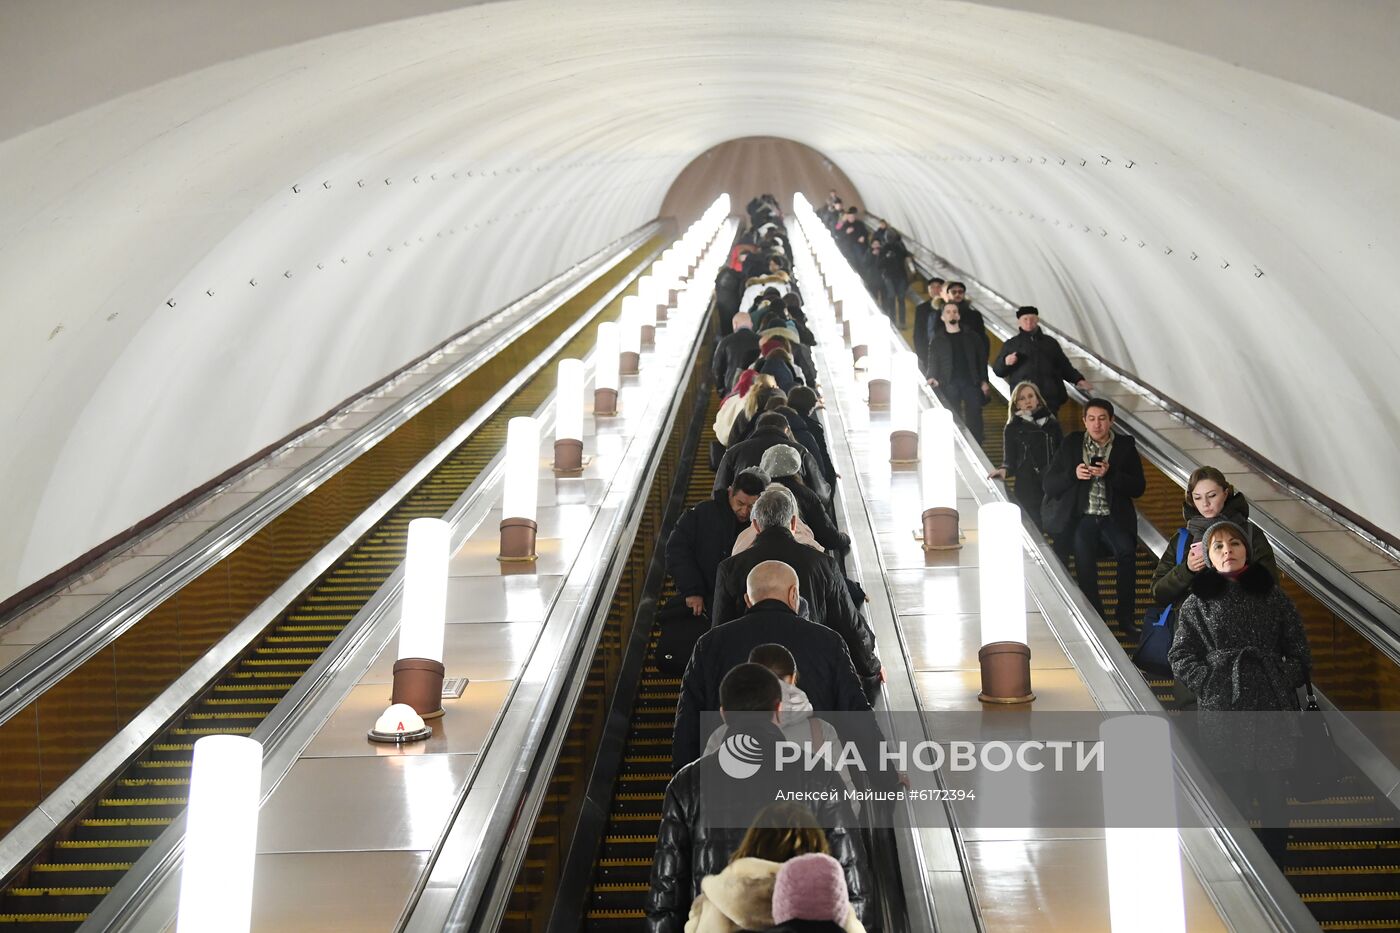  Станция метро "Смоленская" Арбатско-Покровской линии в преддверии ремонта